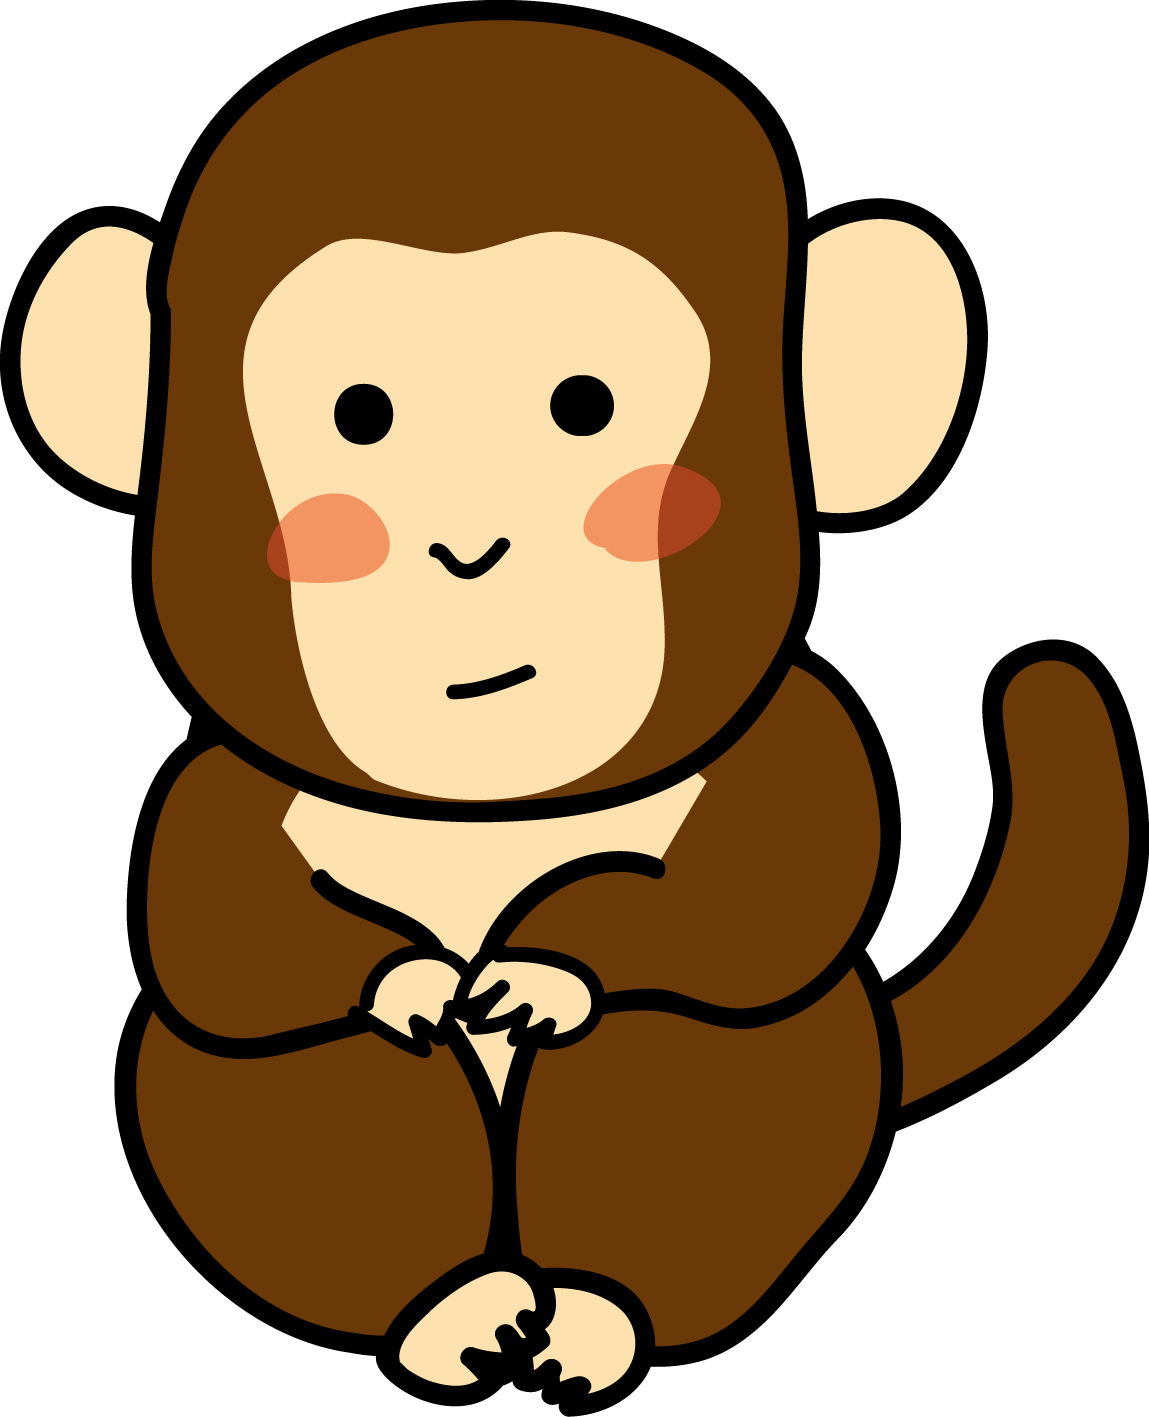 動物の印刷用イラスト素材「小猿」ダウンロード